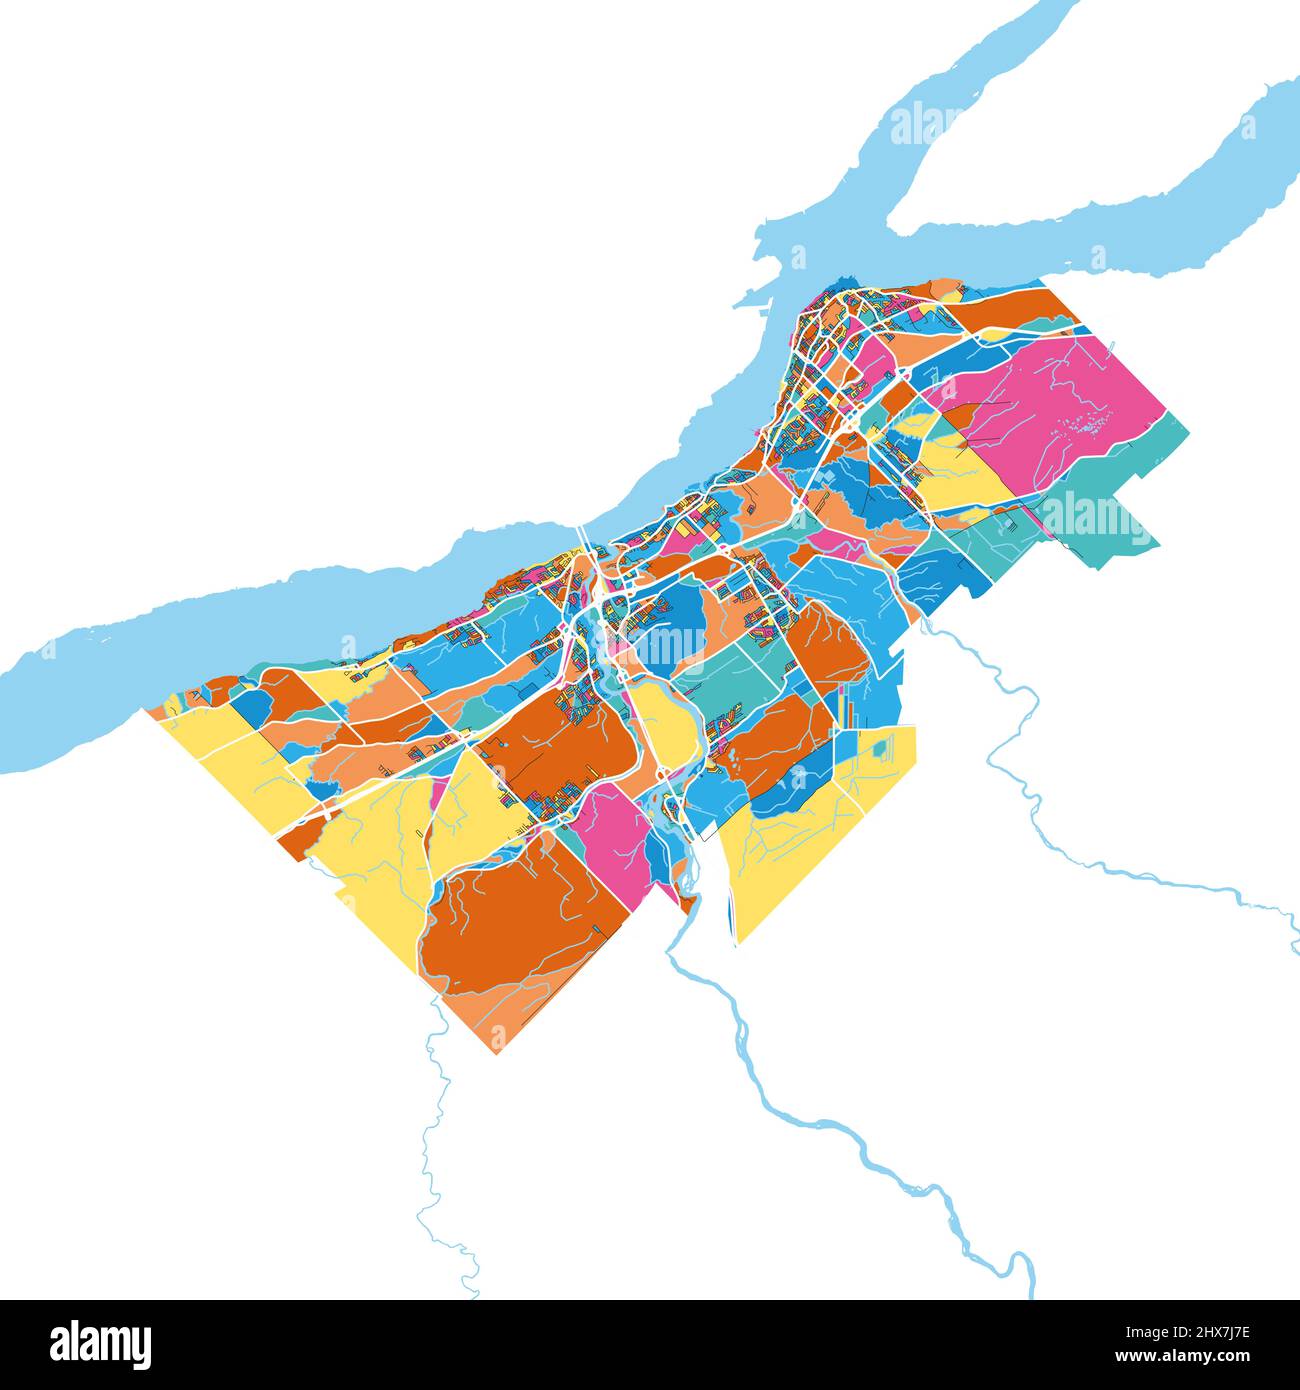 Levis, Québec, Canada colorata mappa d'arte vettoriale ad alta risoluzione con confini della città. Contorni bianchi per le strade principali. Molti dettagli. Forme blu per l'acqua Illustrazione Vettoriale